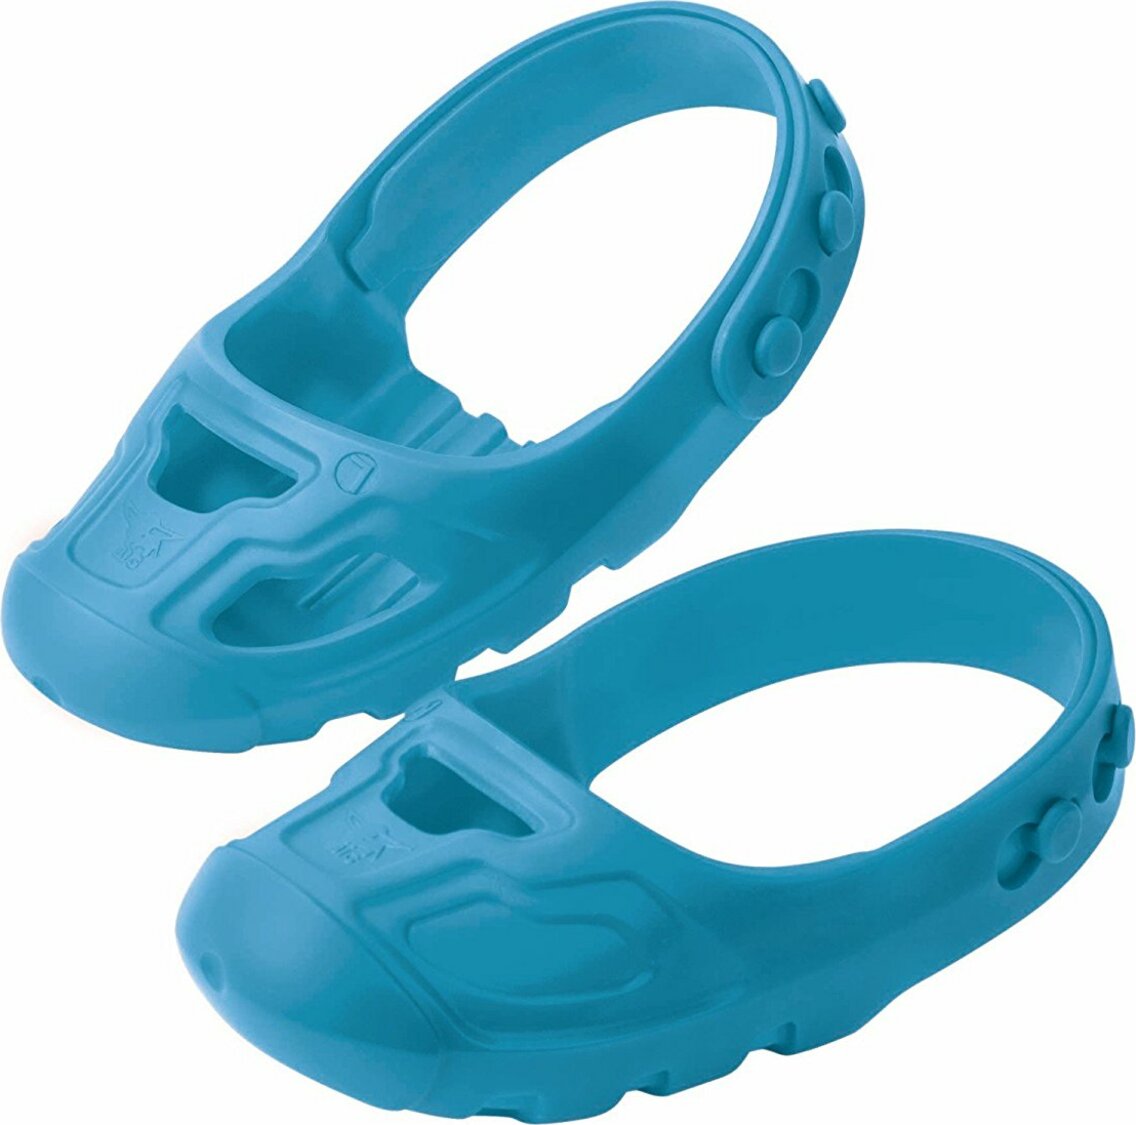 Dětské ochranné návleky na boty Shoe-Care BIG - modré